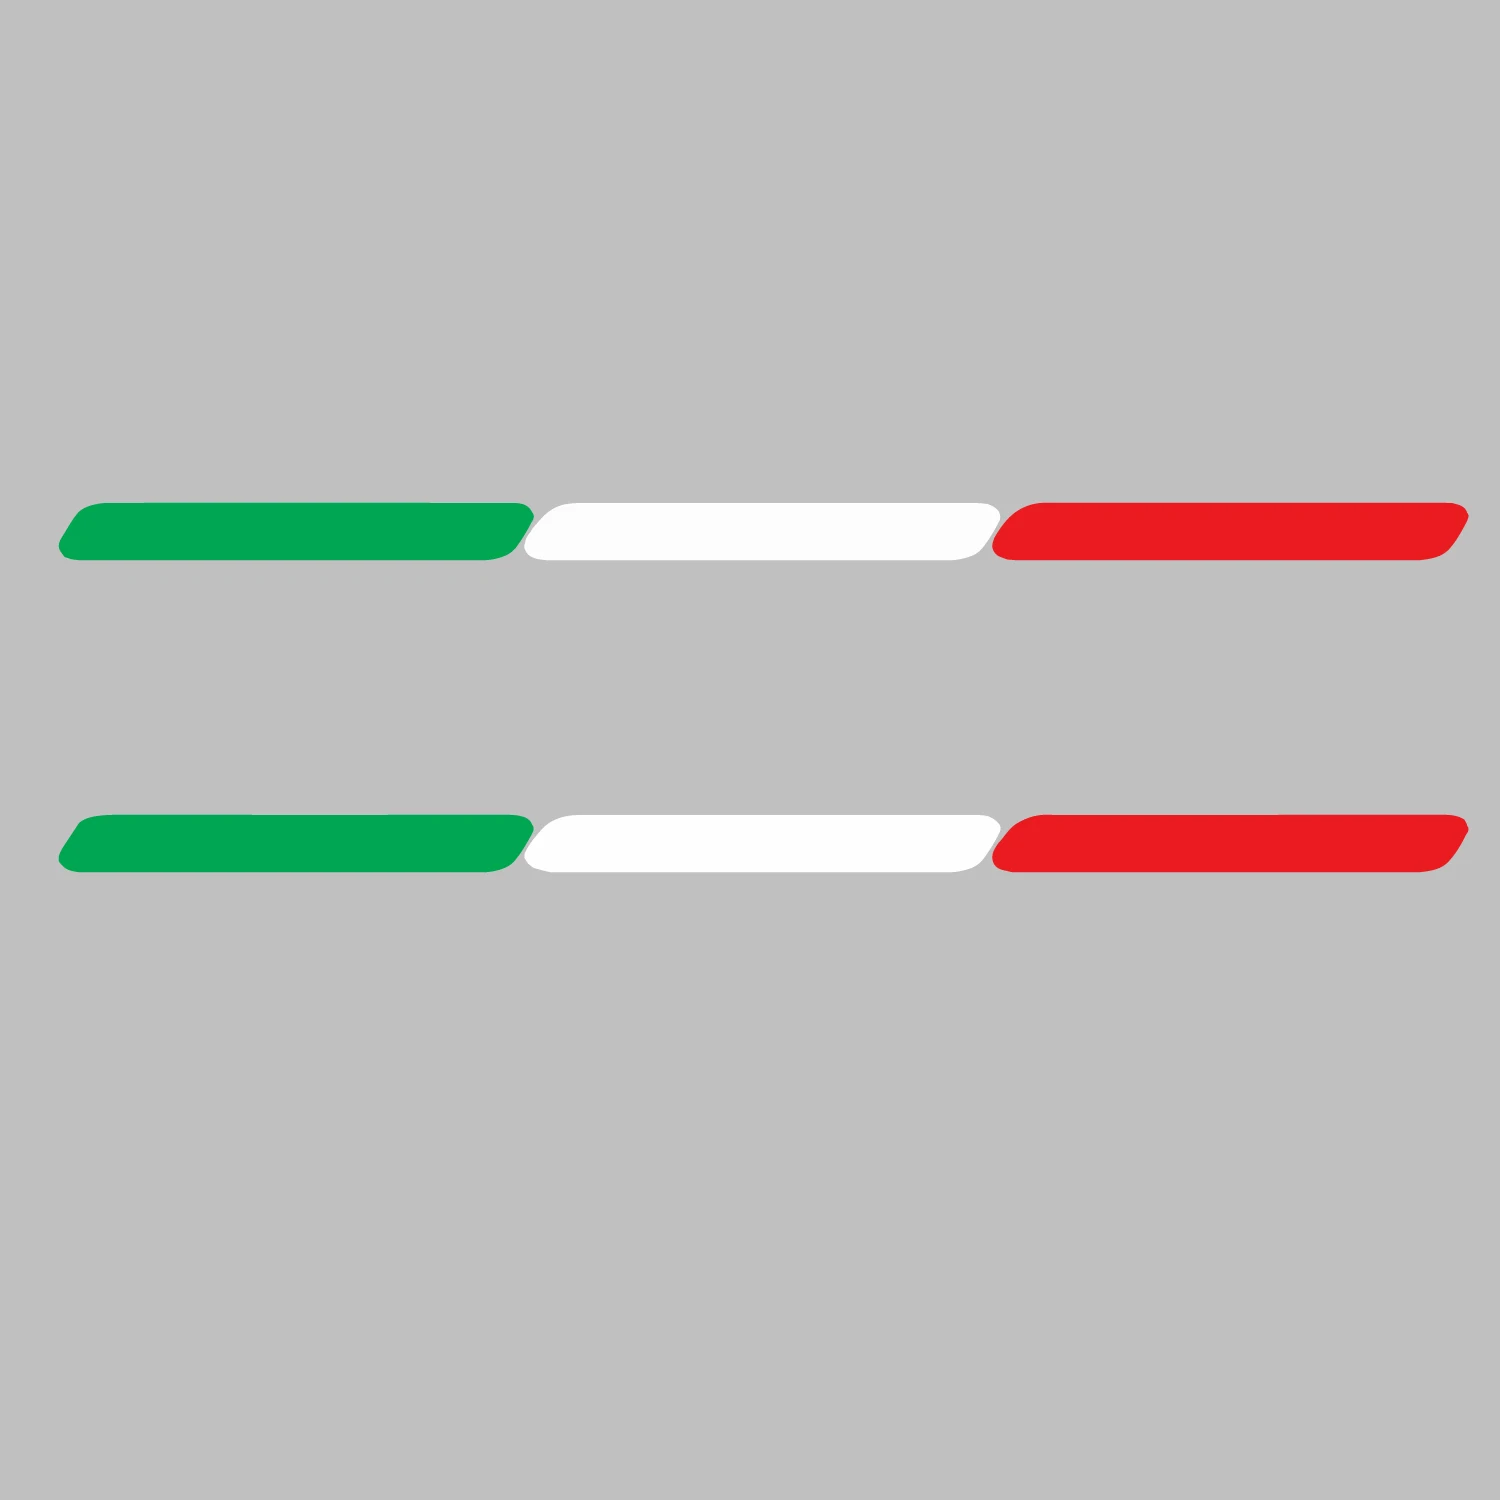 2x Италия Итальянский флаг Полоса Евро Авто Окно Бампер Приборная панель Виниловые наклейки Наклейки